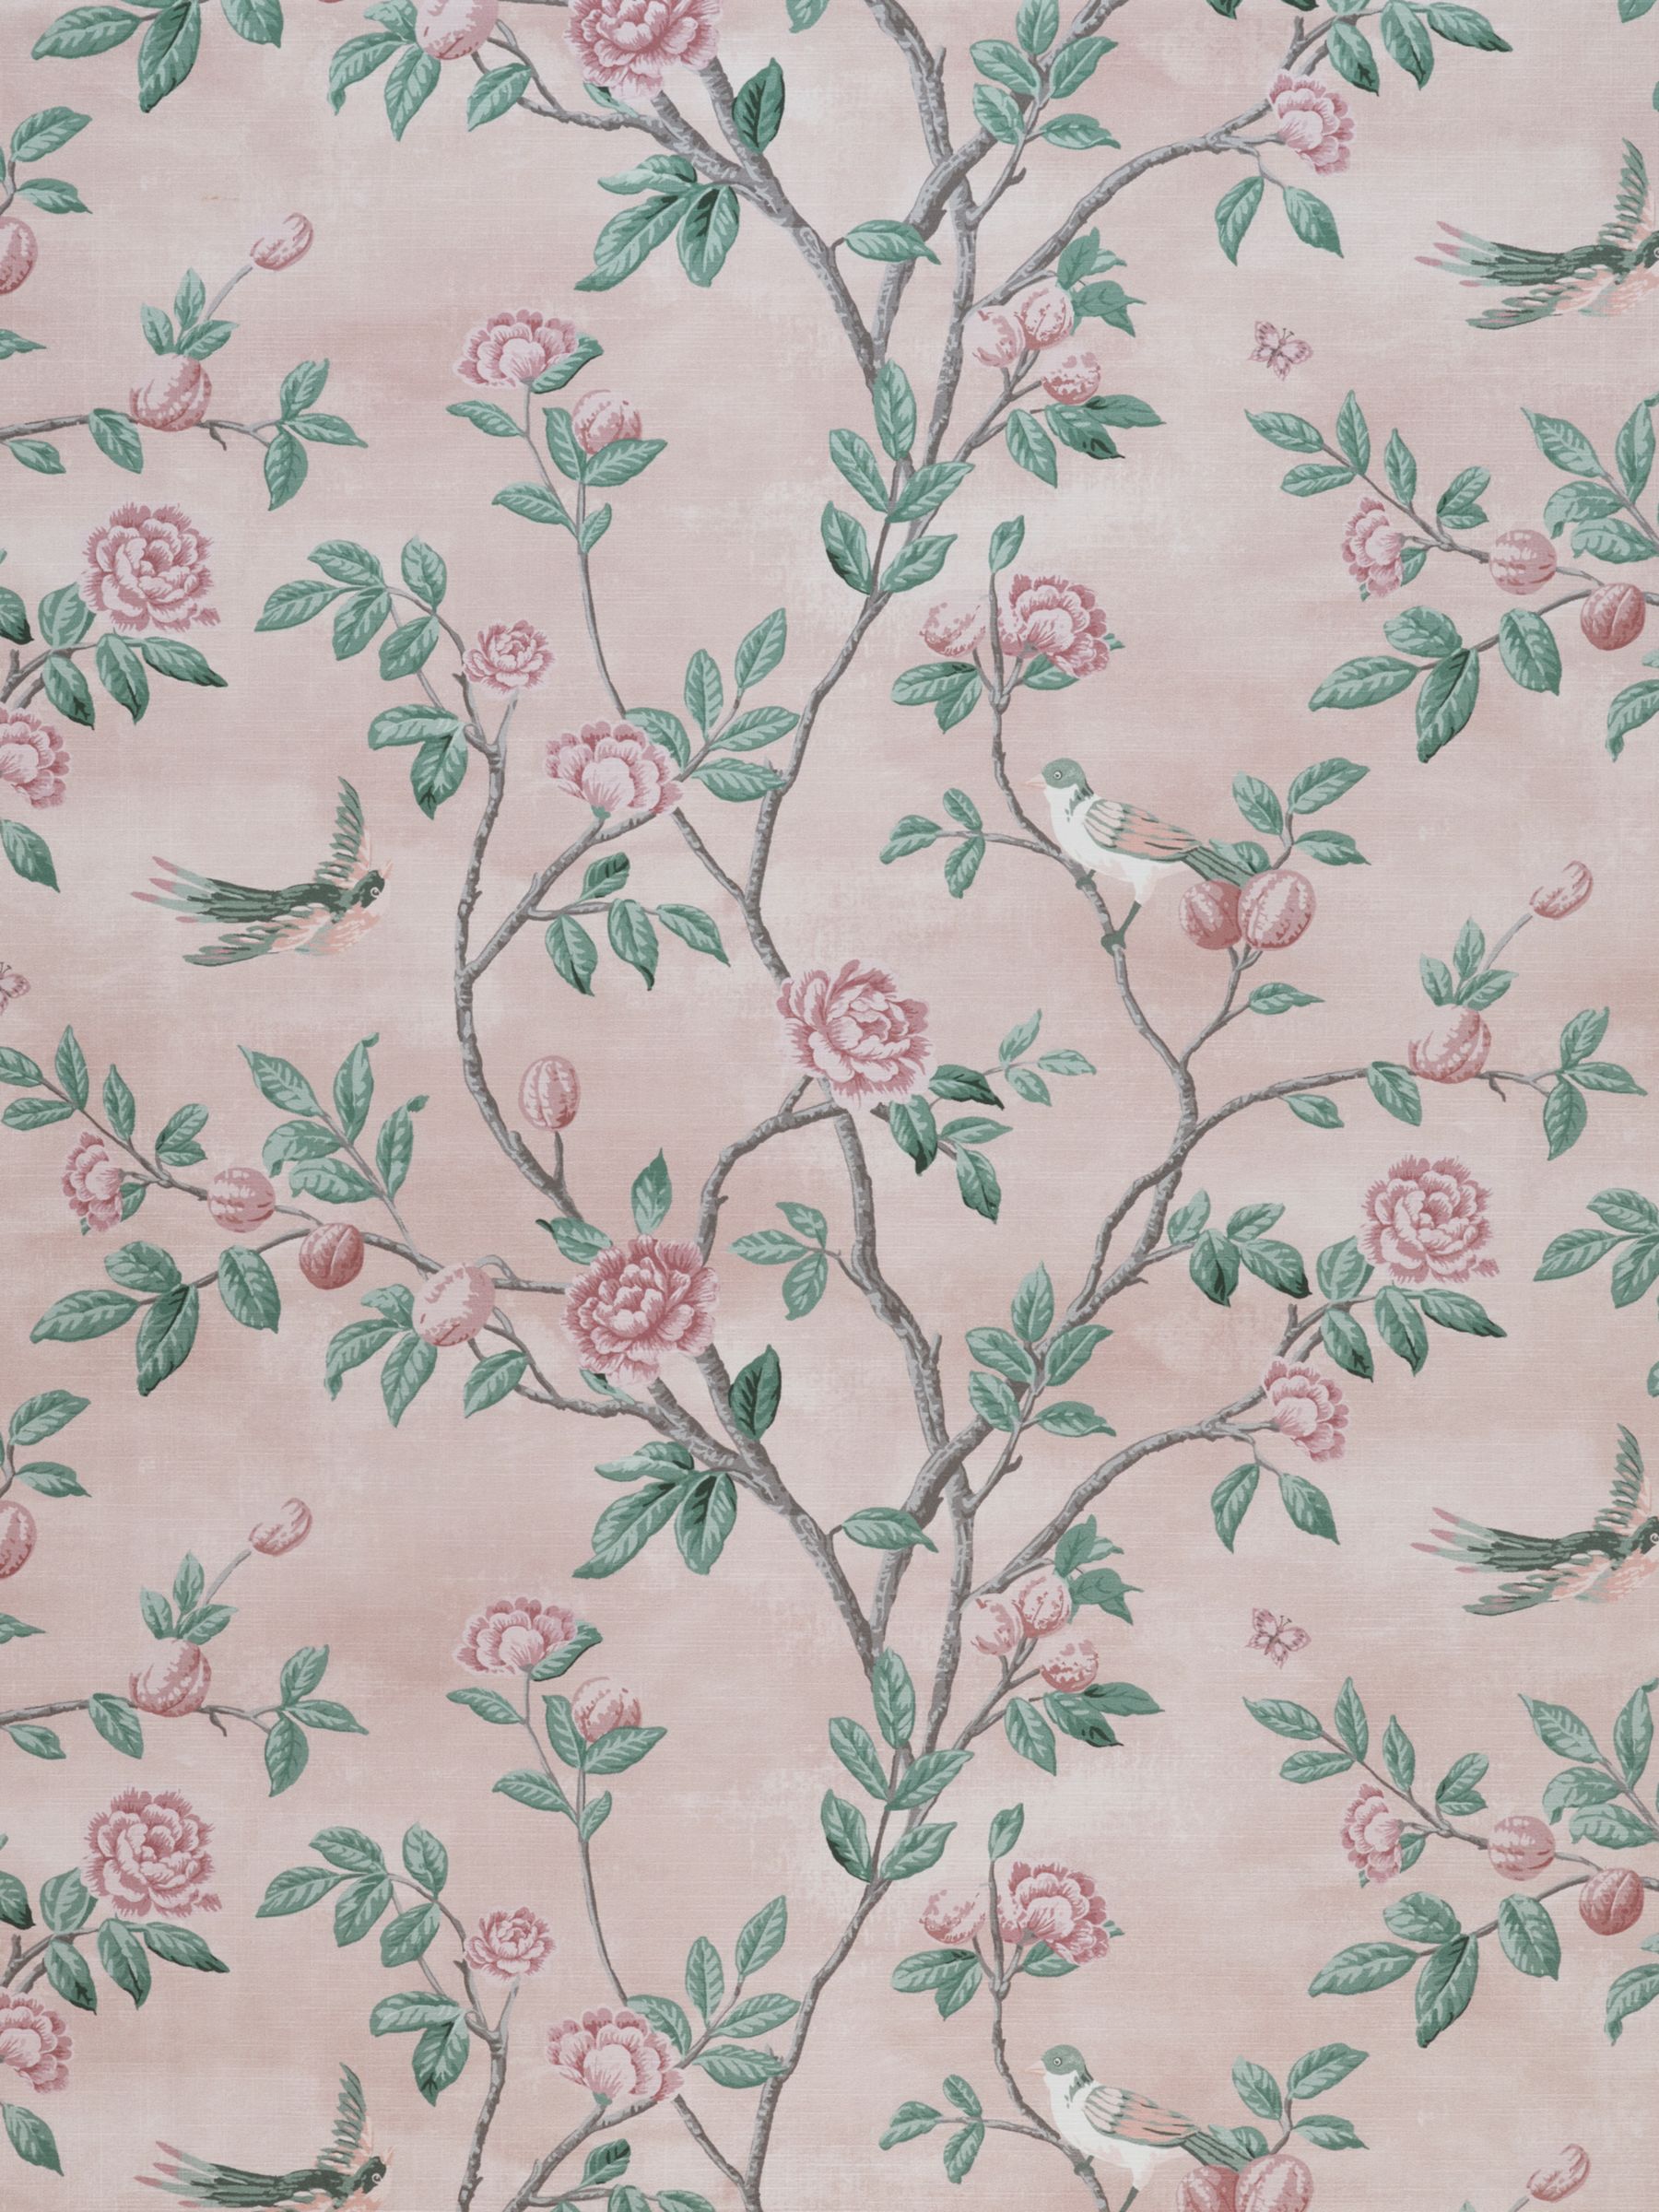 Laura Ashley Eglantine Furnishing Fabric, Blush